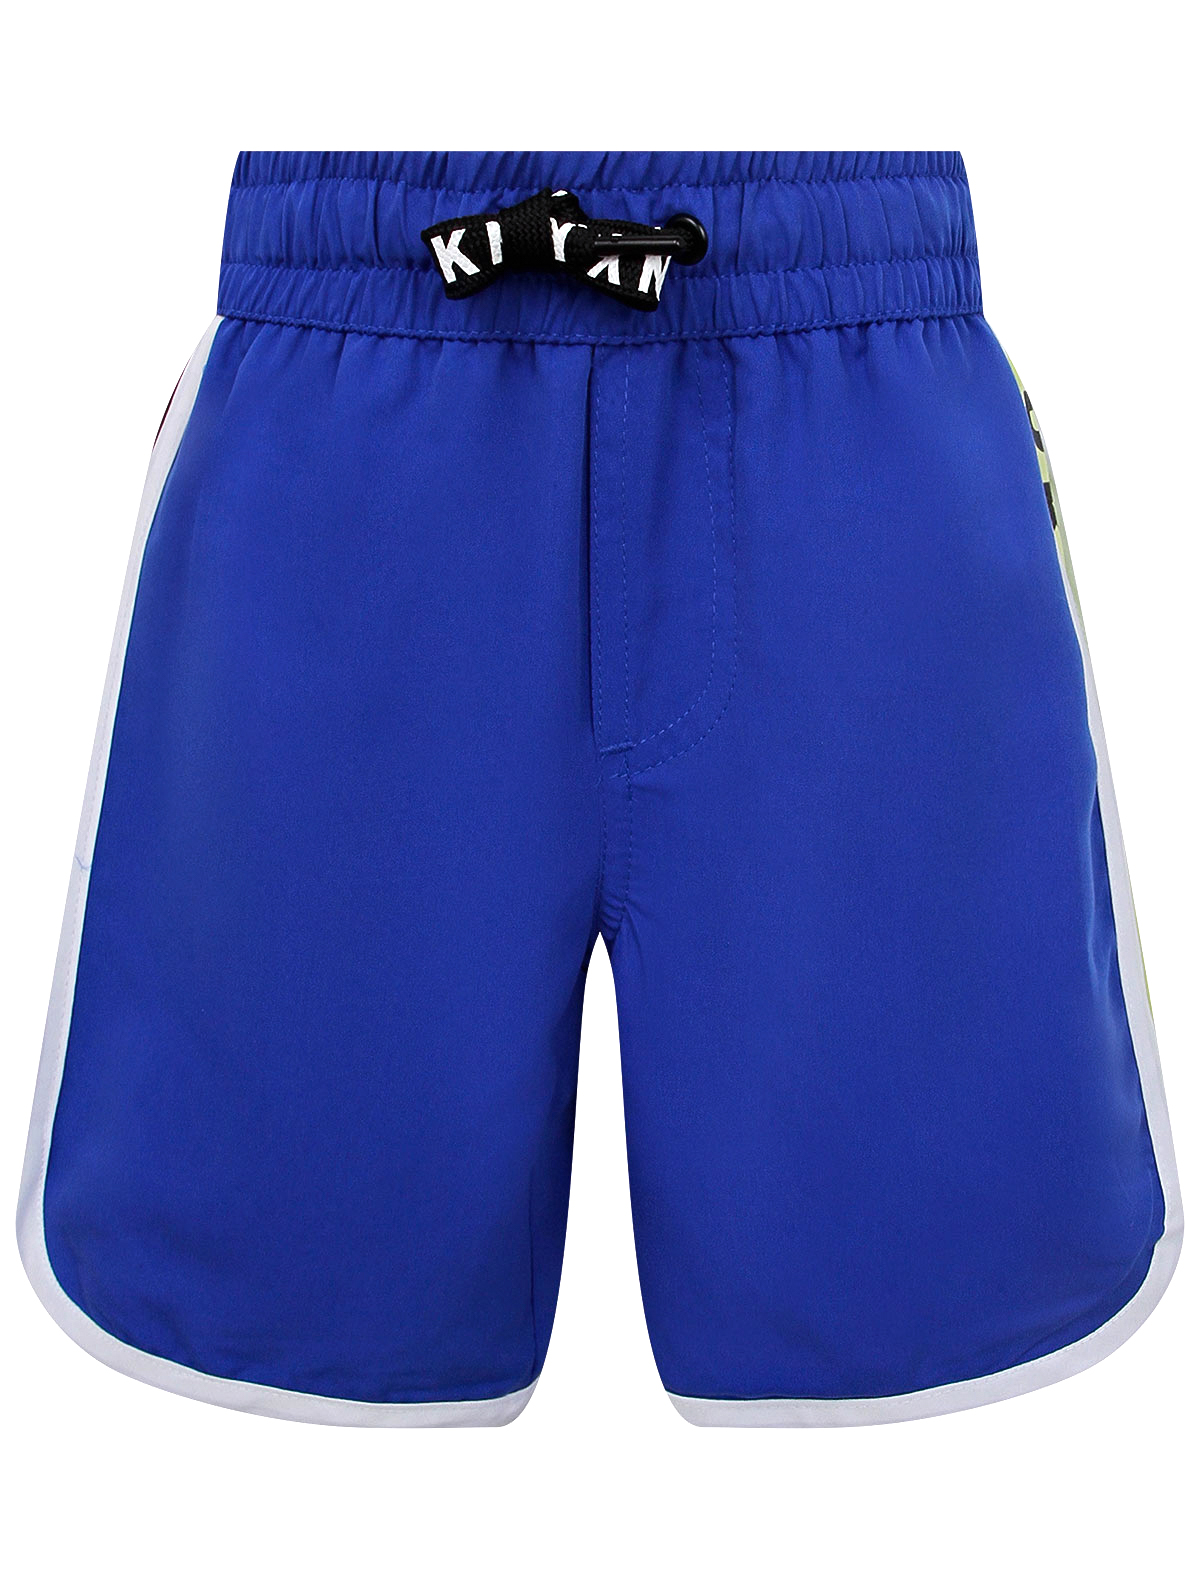 Шорты пляжные DKNY синего цвета